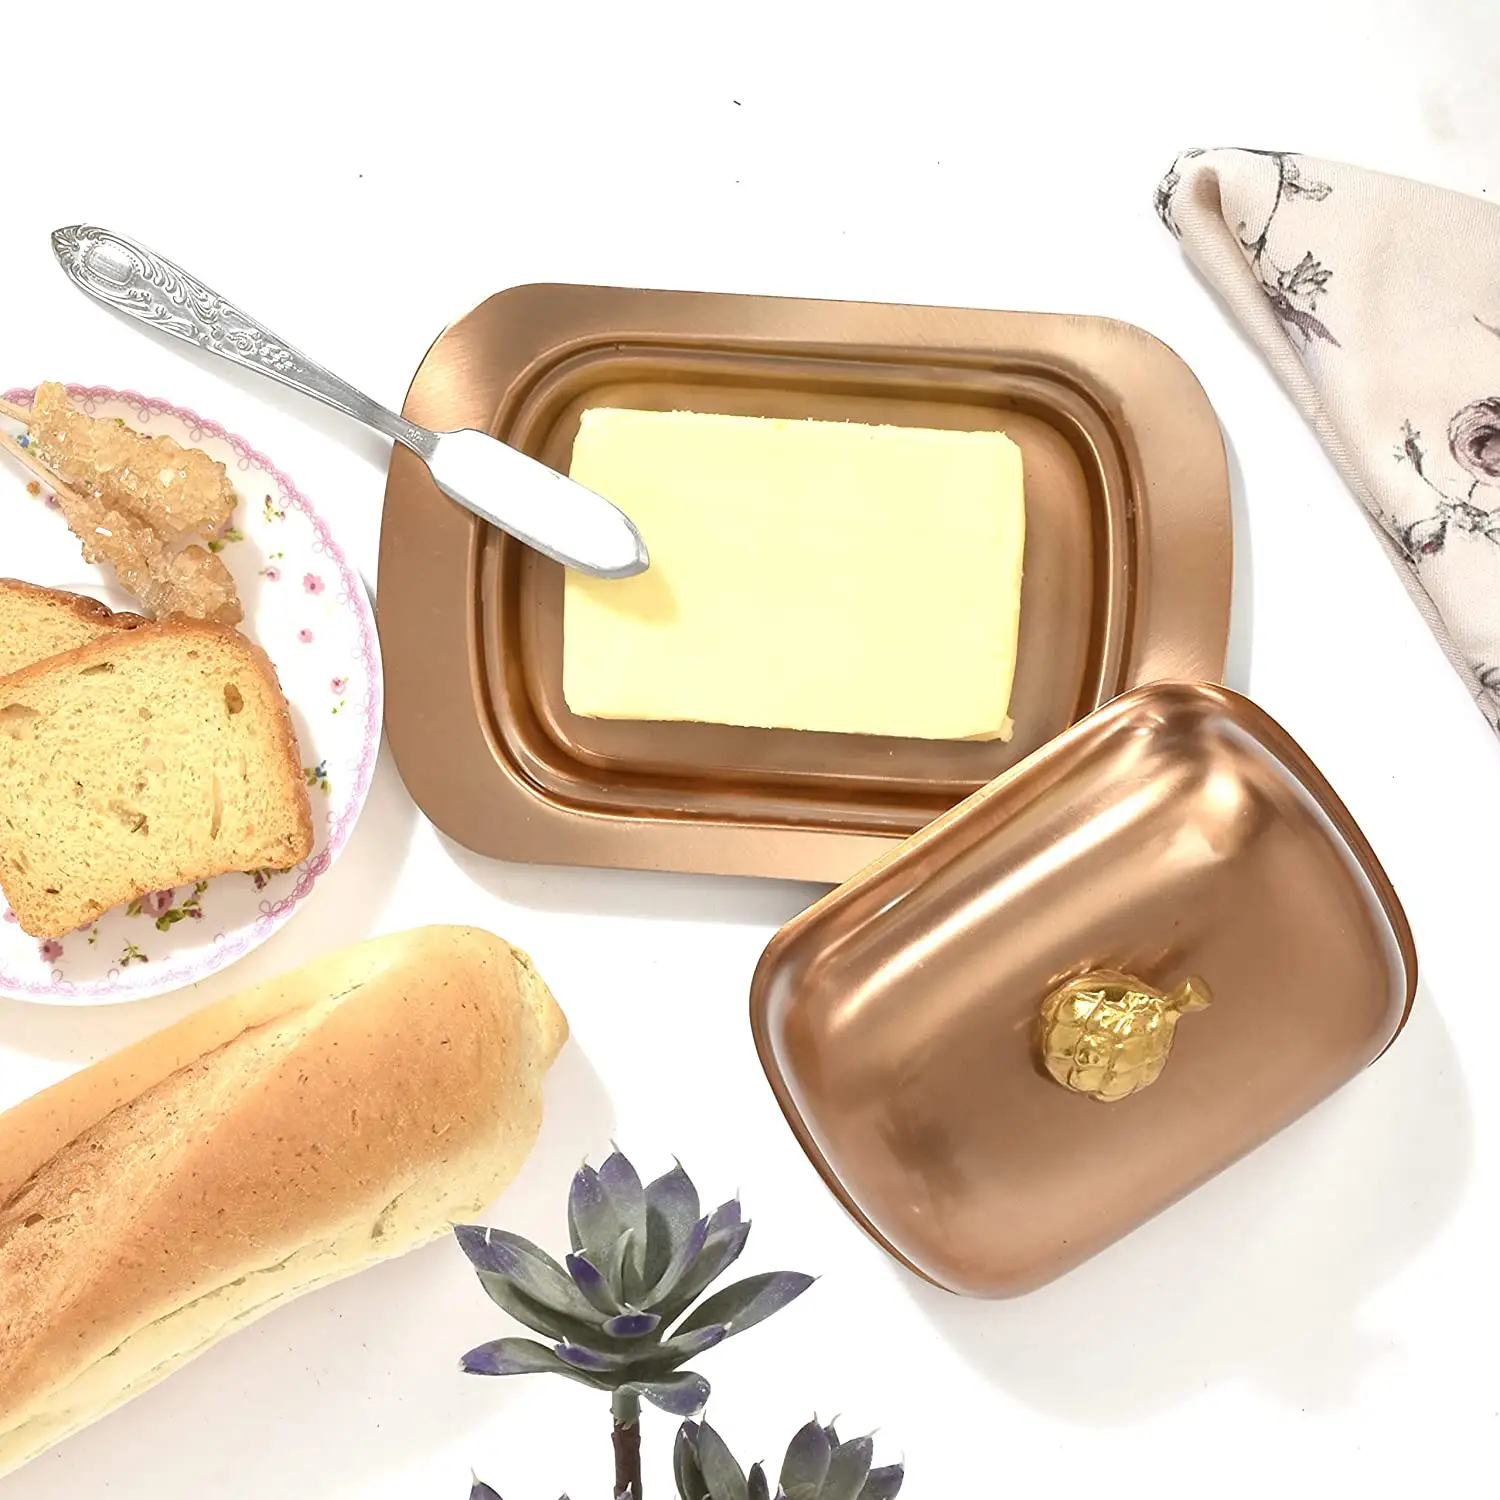 Luxo aço inoxidável manteiga prato armazenamento caixa organizador para casa cozinha mesa ware recipiente goleiro manteiga queijo caixa coberta